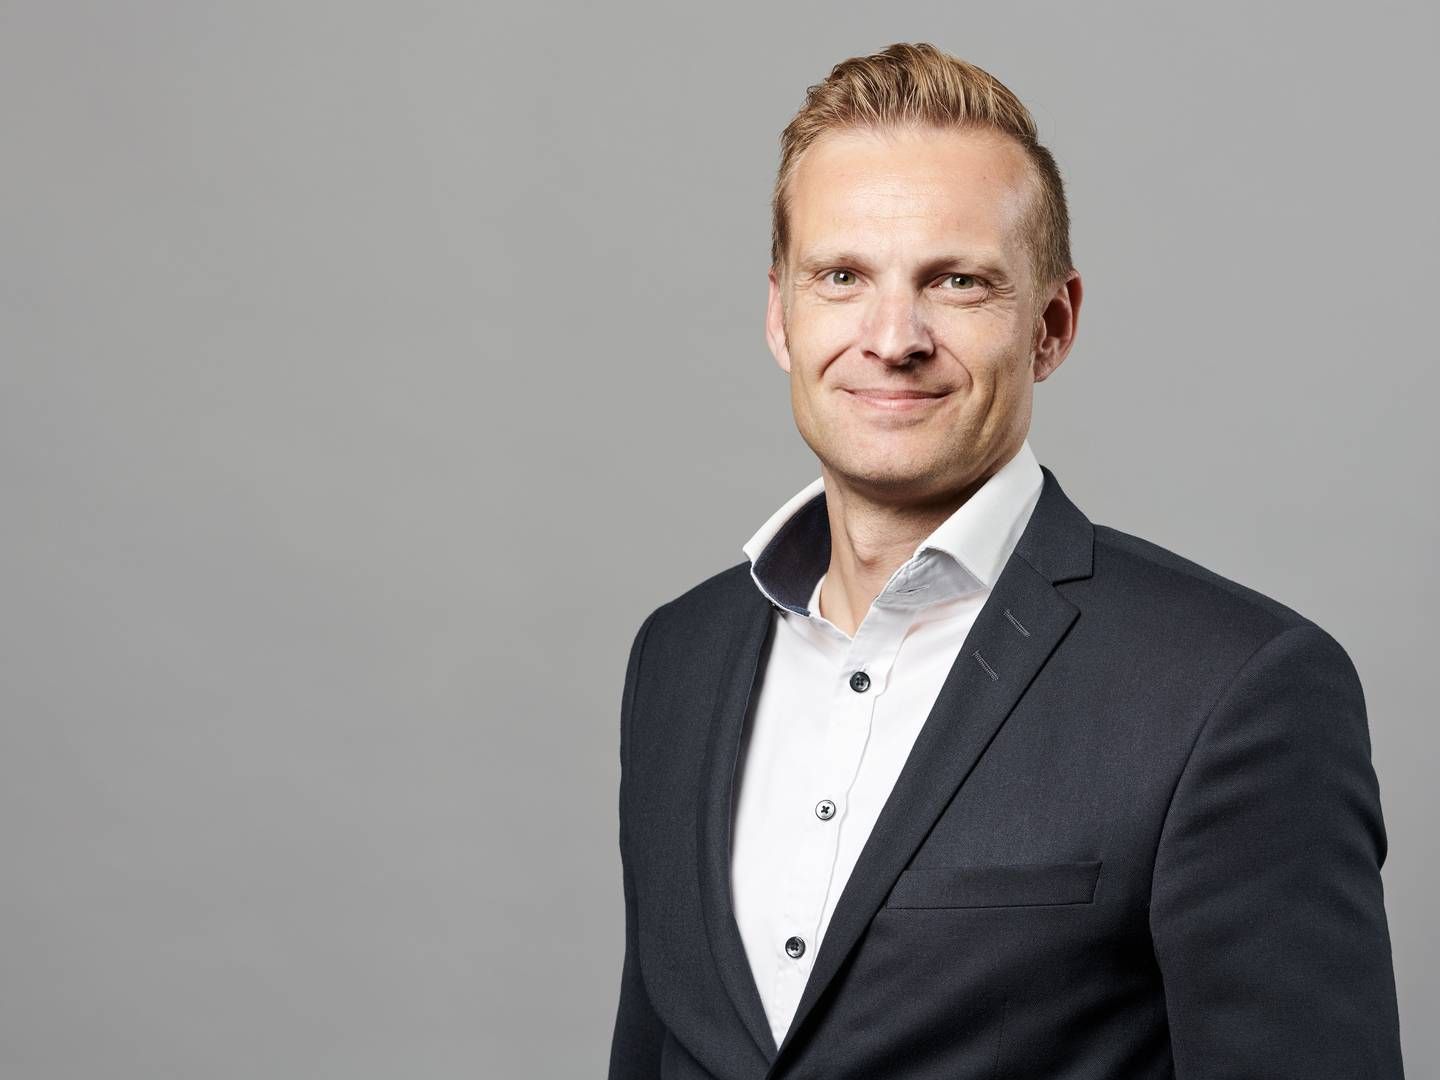 Norlys-direktør Sune Nabe Frederiksen ser det som en fordel, at konkurrent igen har fået del i Discovery-kanaler. | Foto: PR